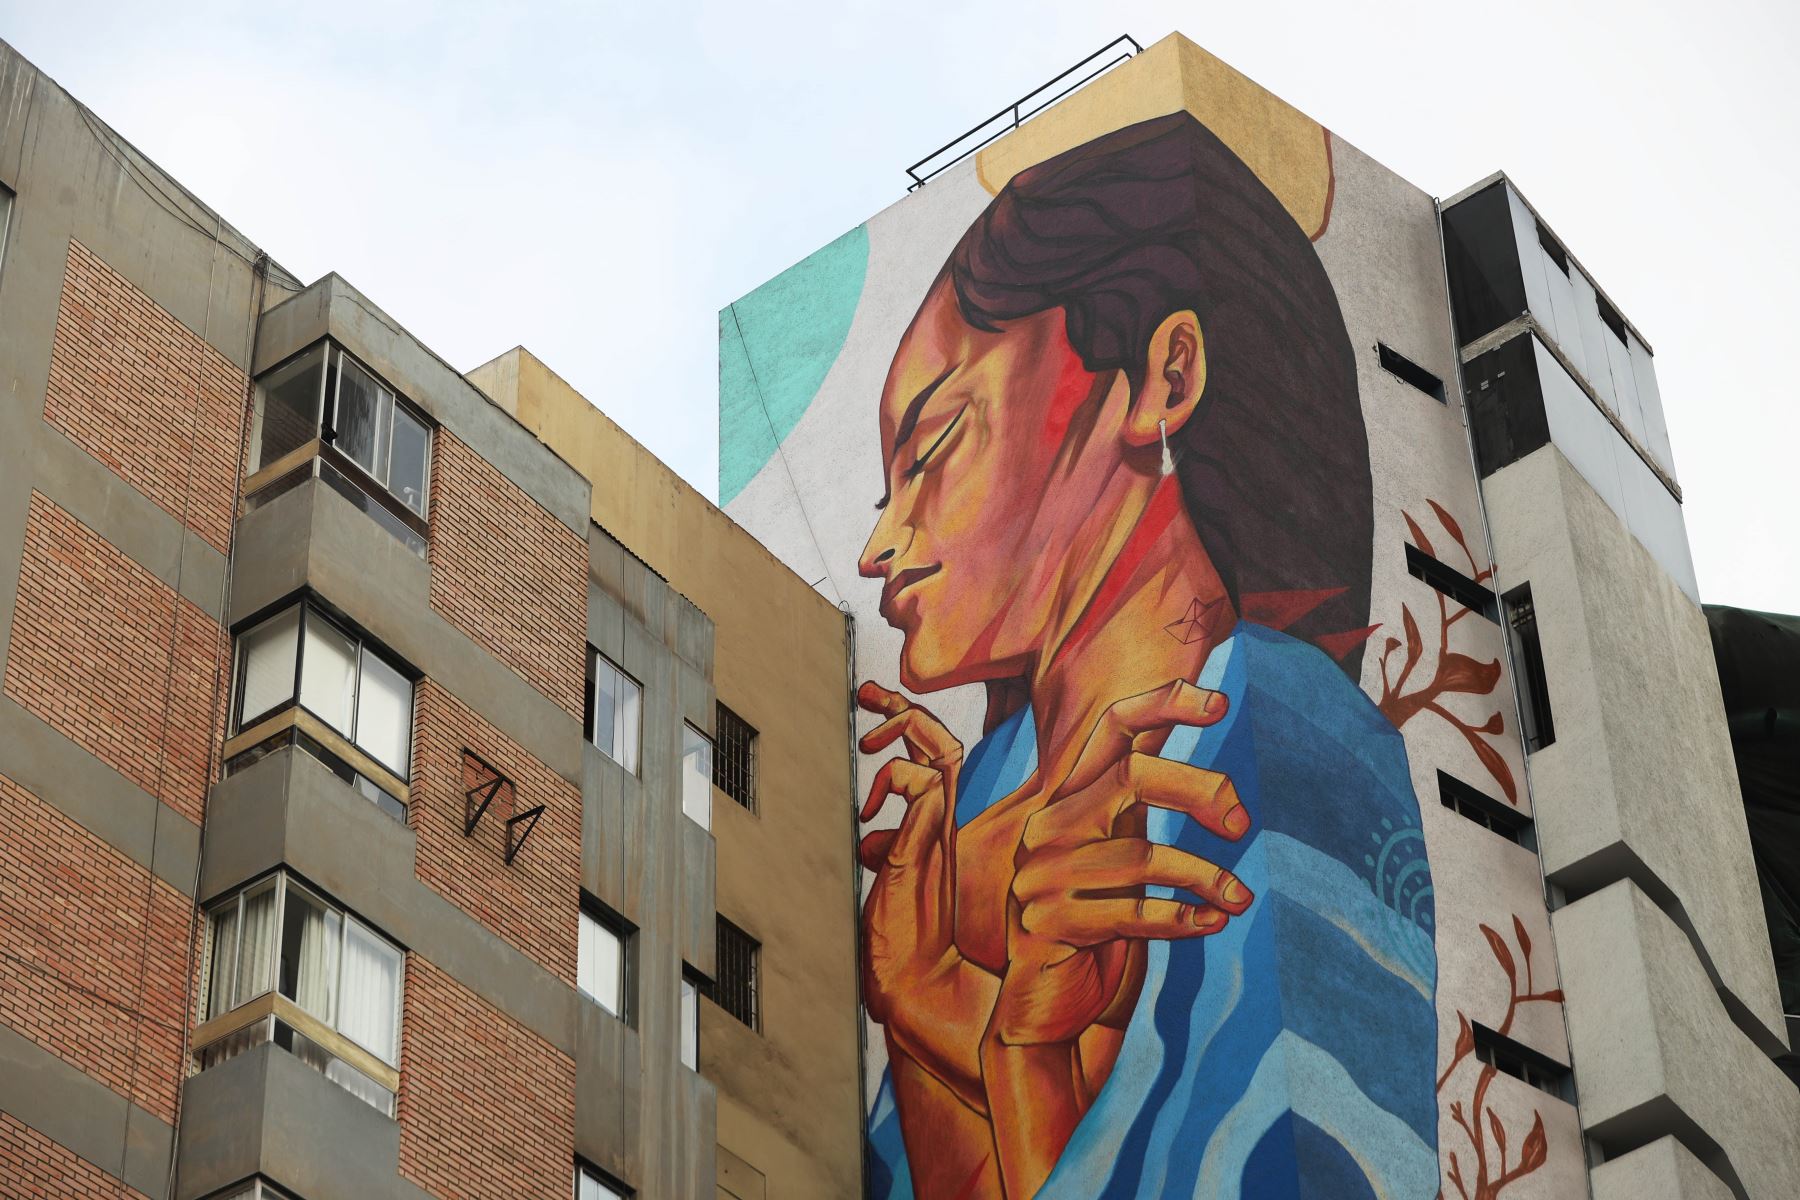 Detalle de mural artístico en Miraflores, ubicado en la calle Schell, frente al parque Kennedy. Foto: ANDINA/Daniel Bracamonte